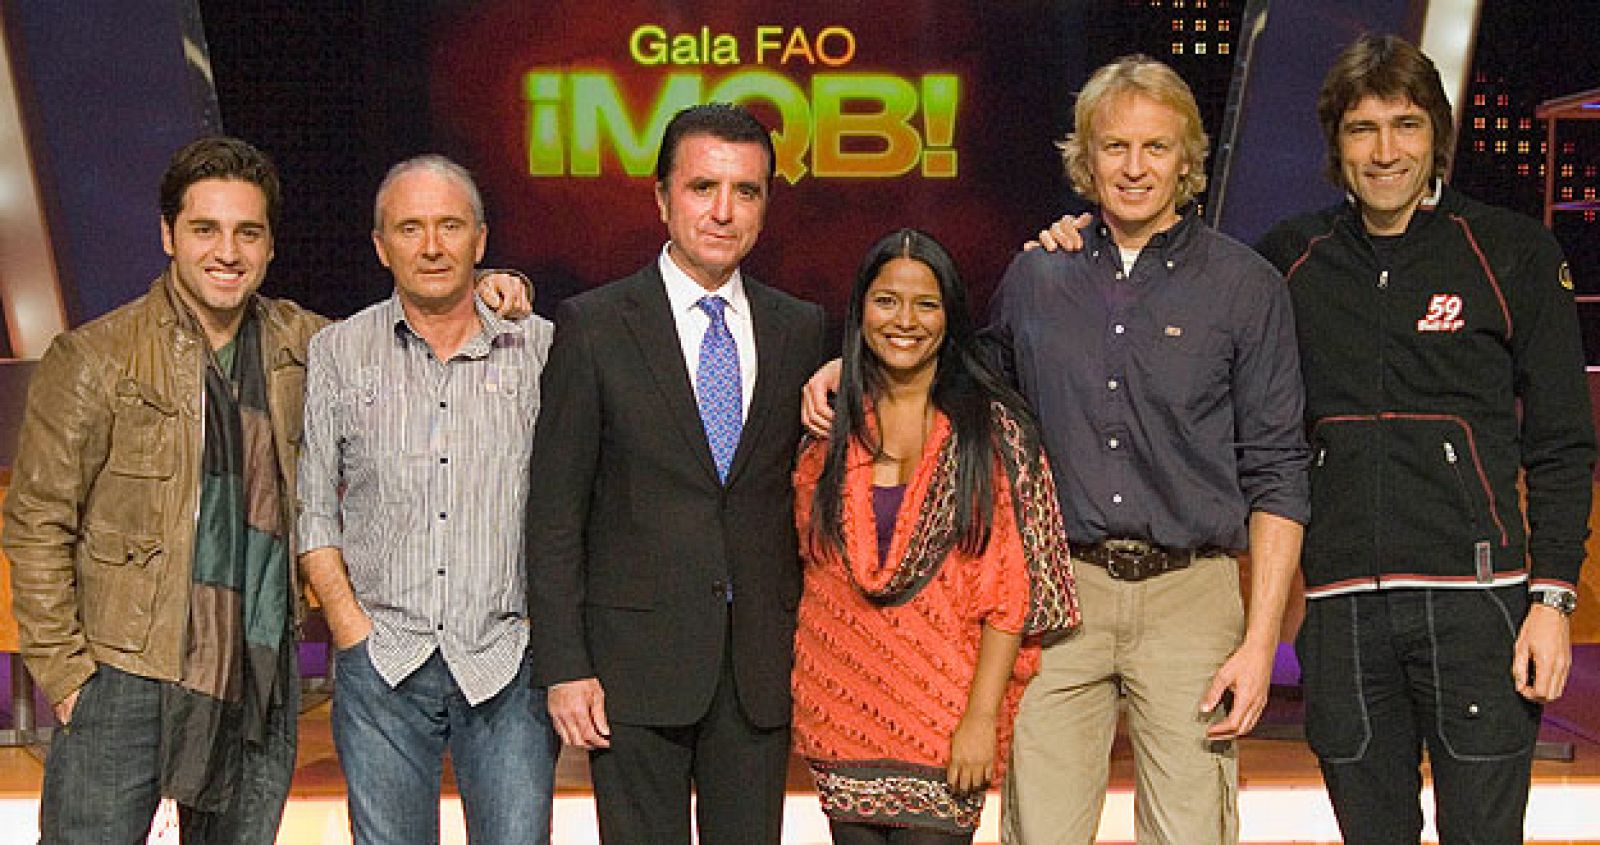 Algunos de los participantes en la gala "FAO ¡Mira quién baila!" 2008.